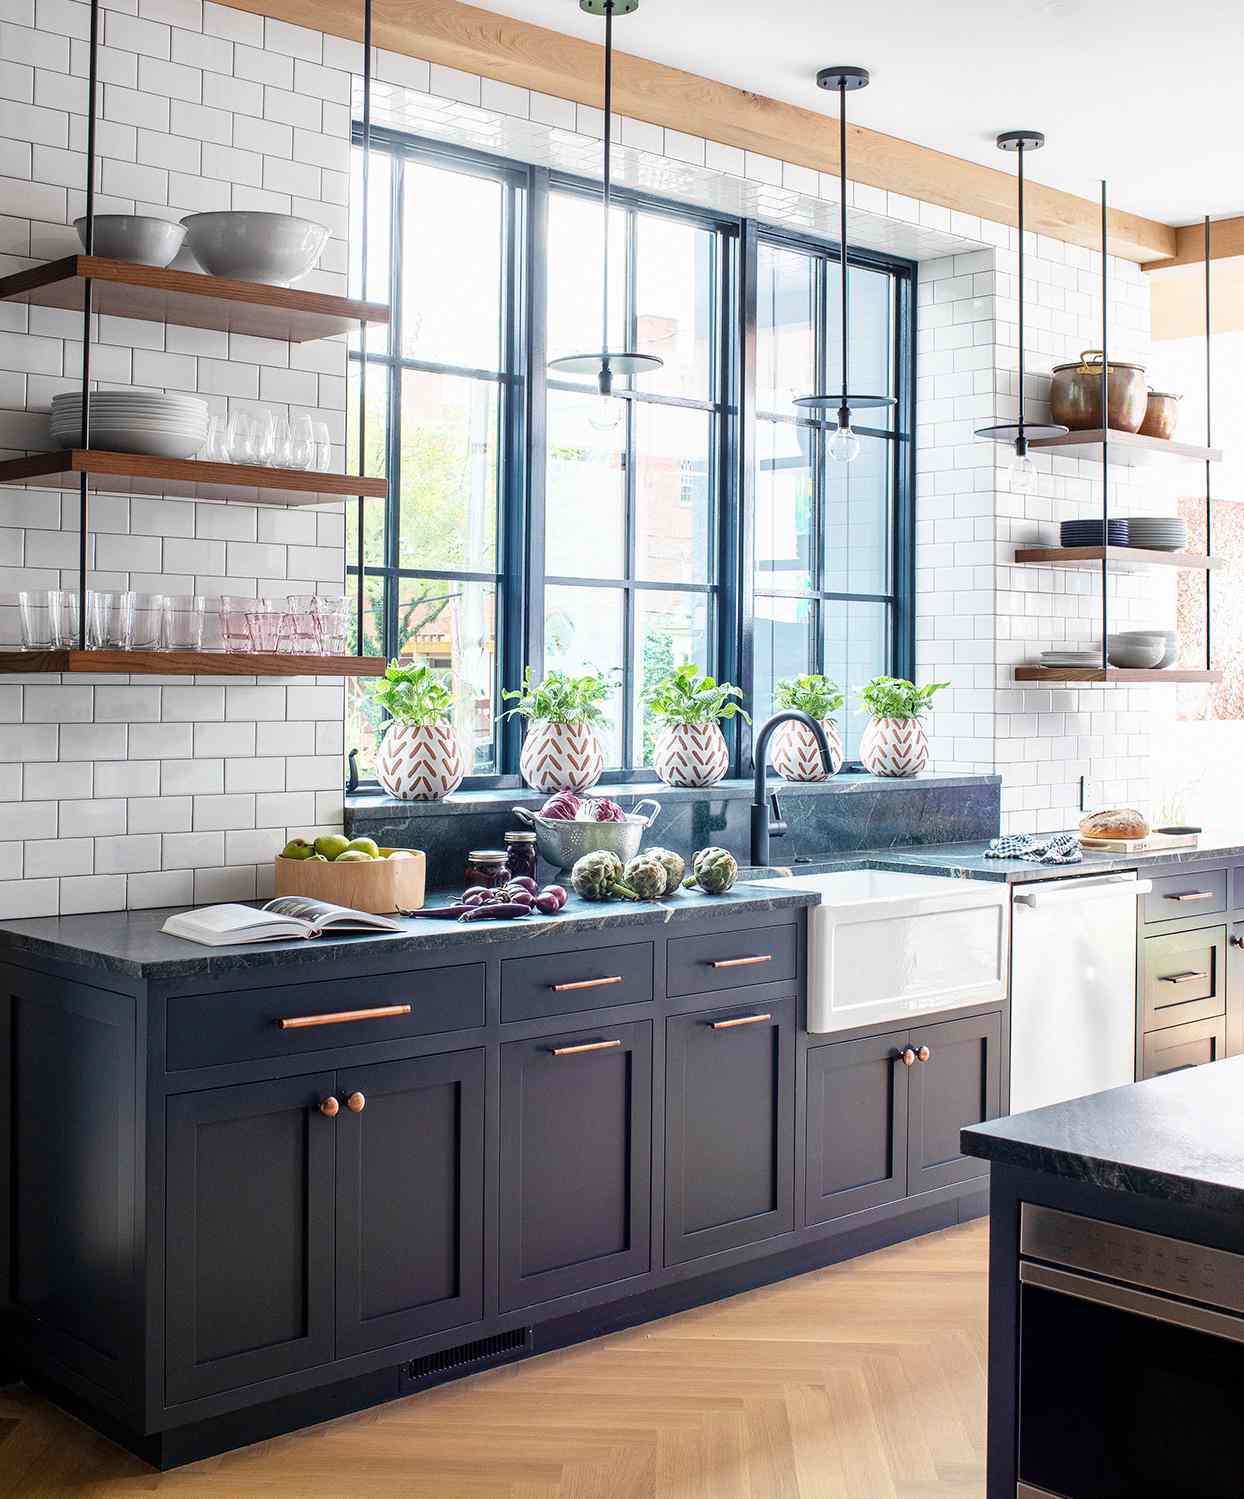 modern dark blue and neutral tones kitchen with bright windows